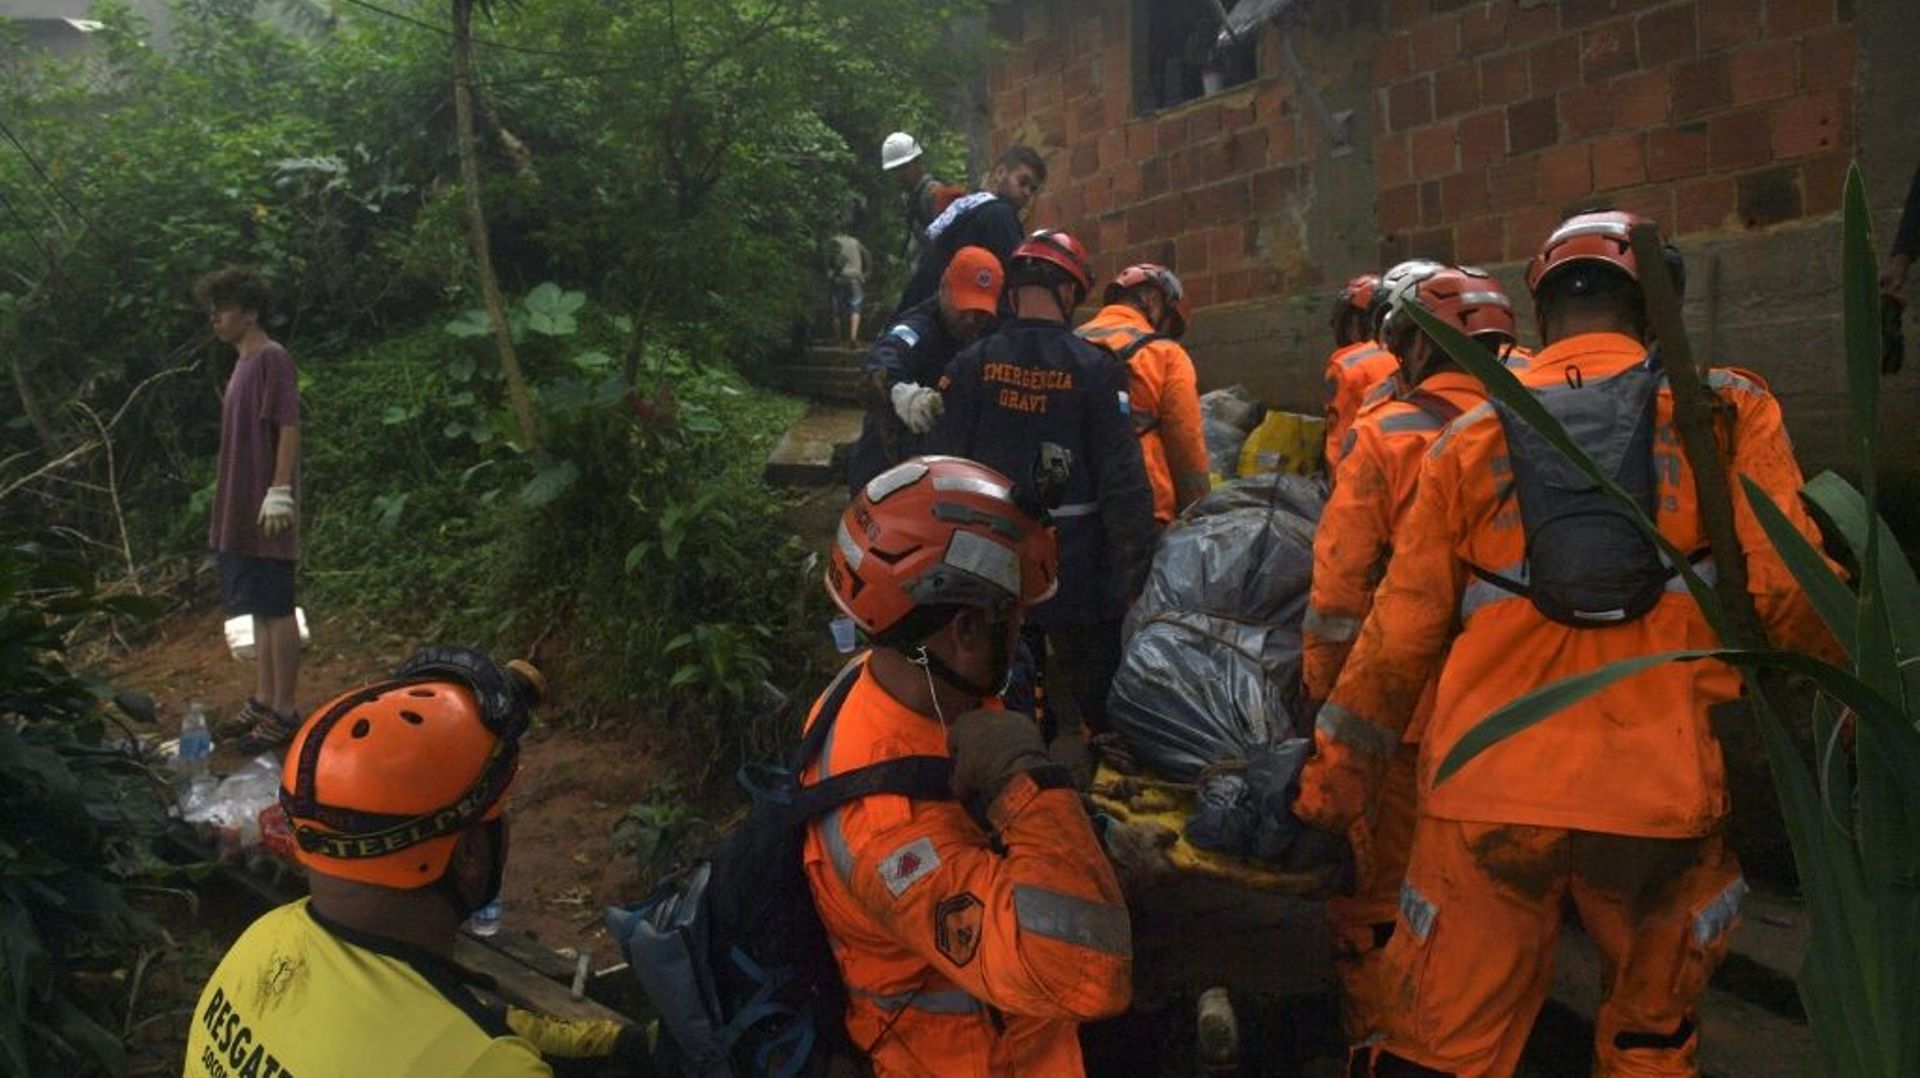 Des sauveteurs portent le corps d'une victime après des glissements de terrain causés par des pluies diluviennes, le 19 février 2022 à Petropolis, au Brésil